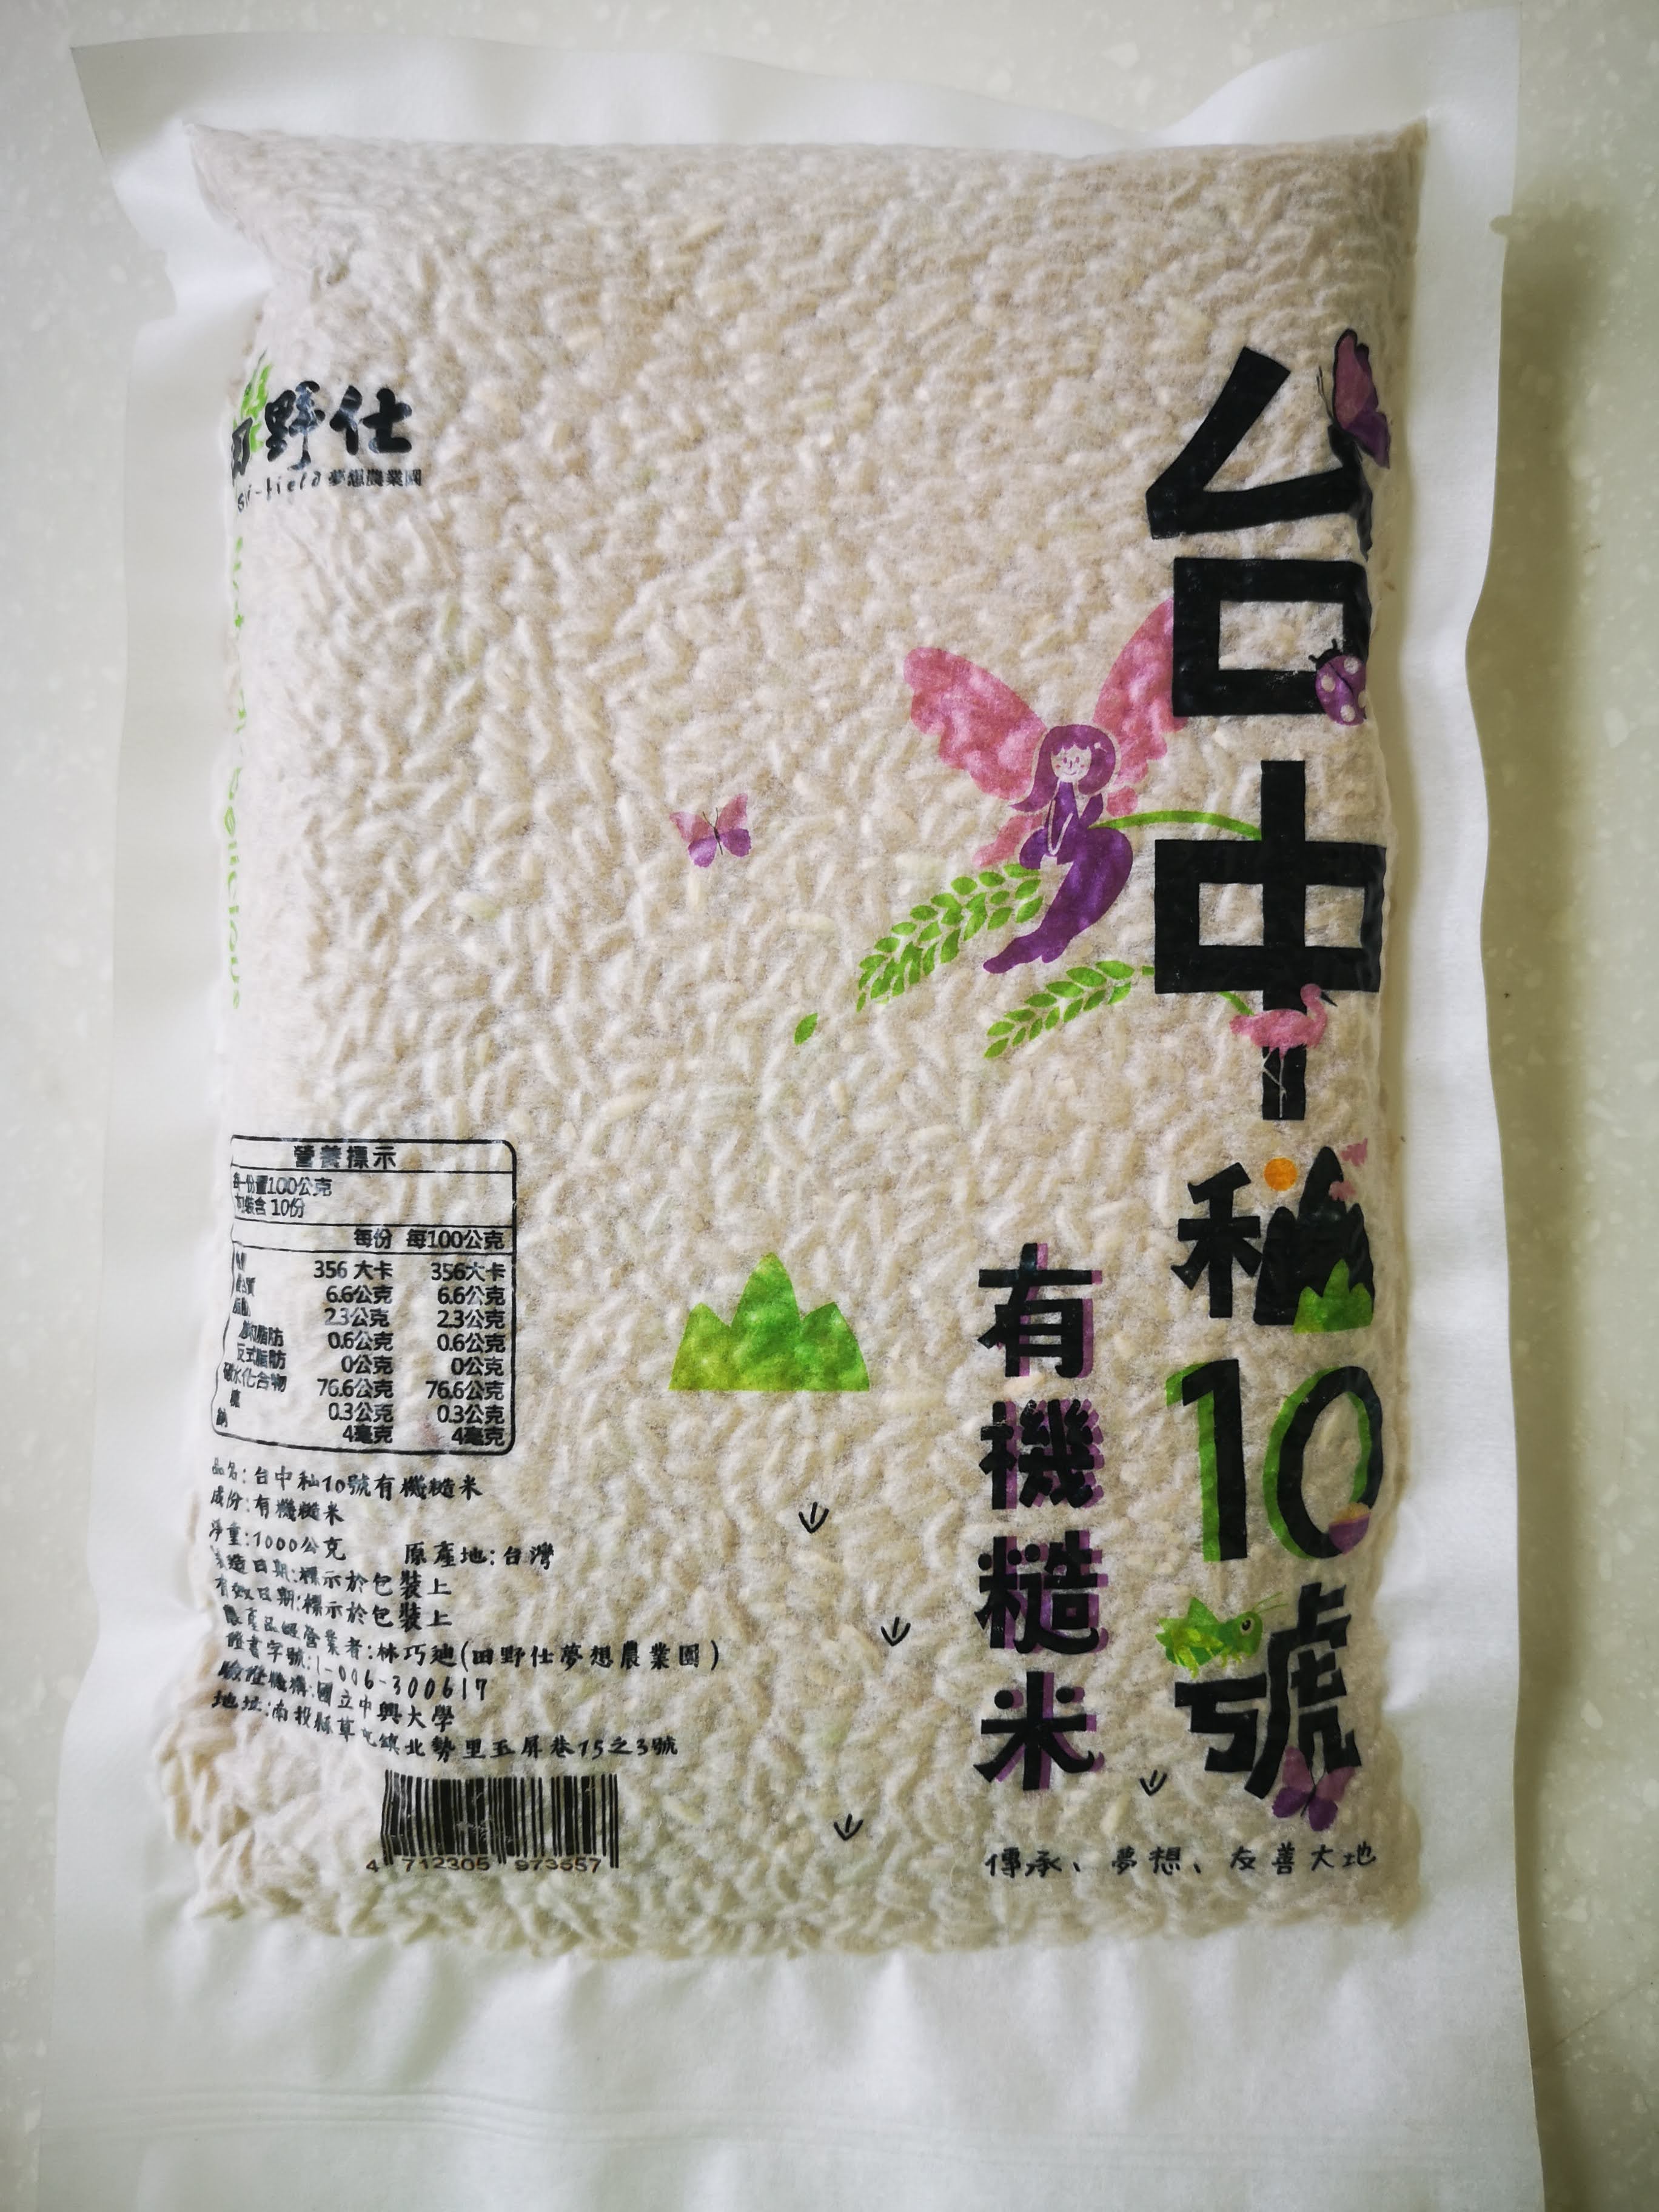 【田野仕】台中秈10號有機糙米* 1斤裝 台灣在地 秈糙米 小農 友善耕作 Organic 有機米 有機長秈糙米